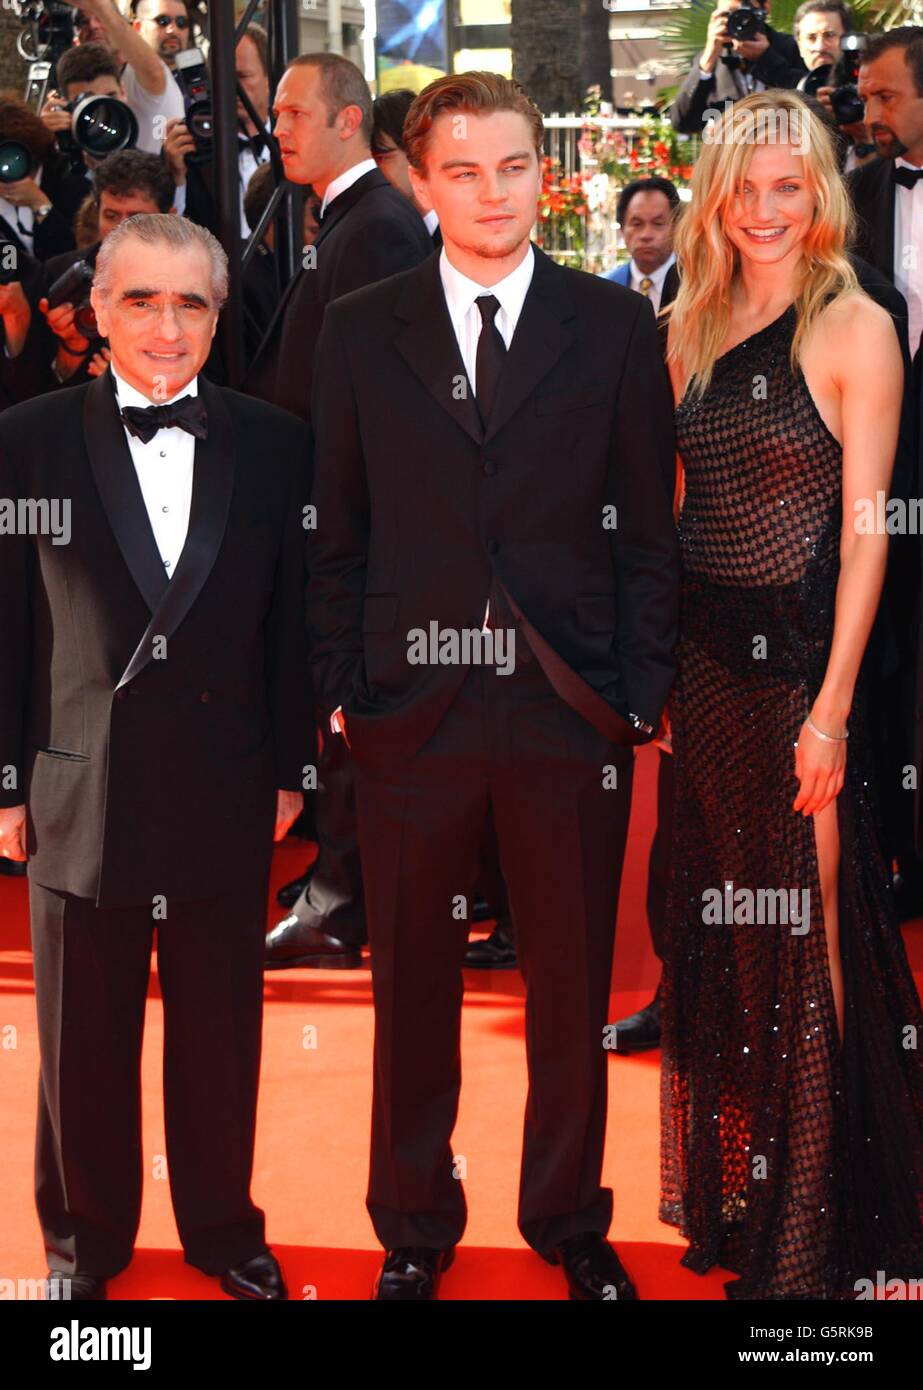 Direttore Martin Scorsese (a sinistra) con gli attori Leonardo DiCaprio, Cameron Diaz in arrivo per la prima dell'ultimo film di Scorsese 'Gangs of New York' al Palais des Festival durante il 55° Festival di Cannes. Foto Stock